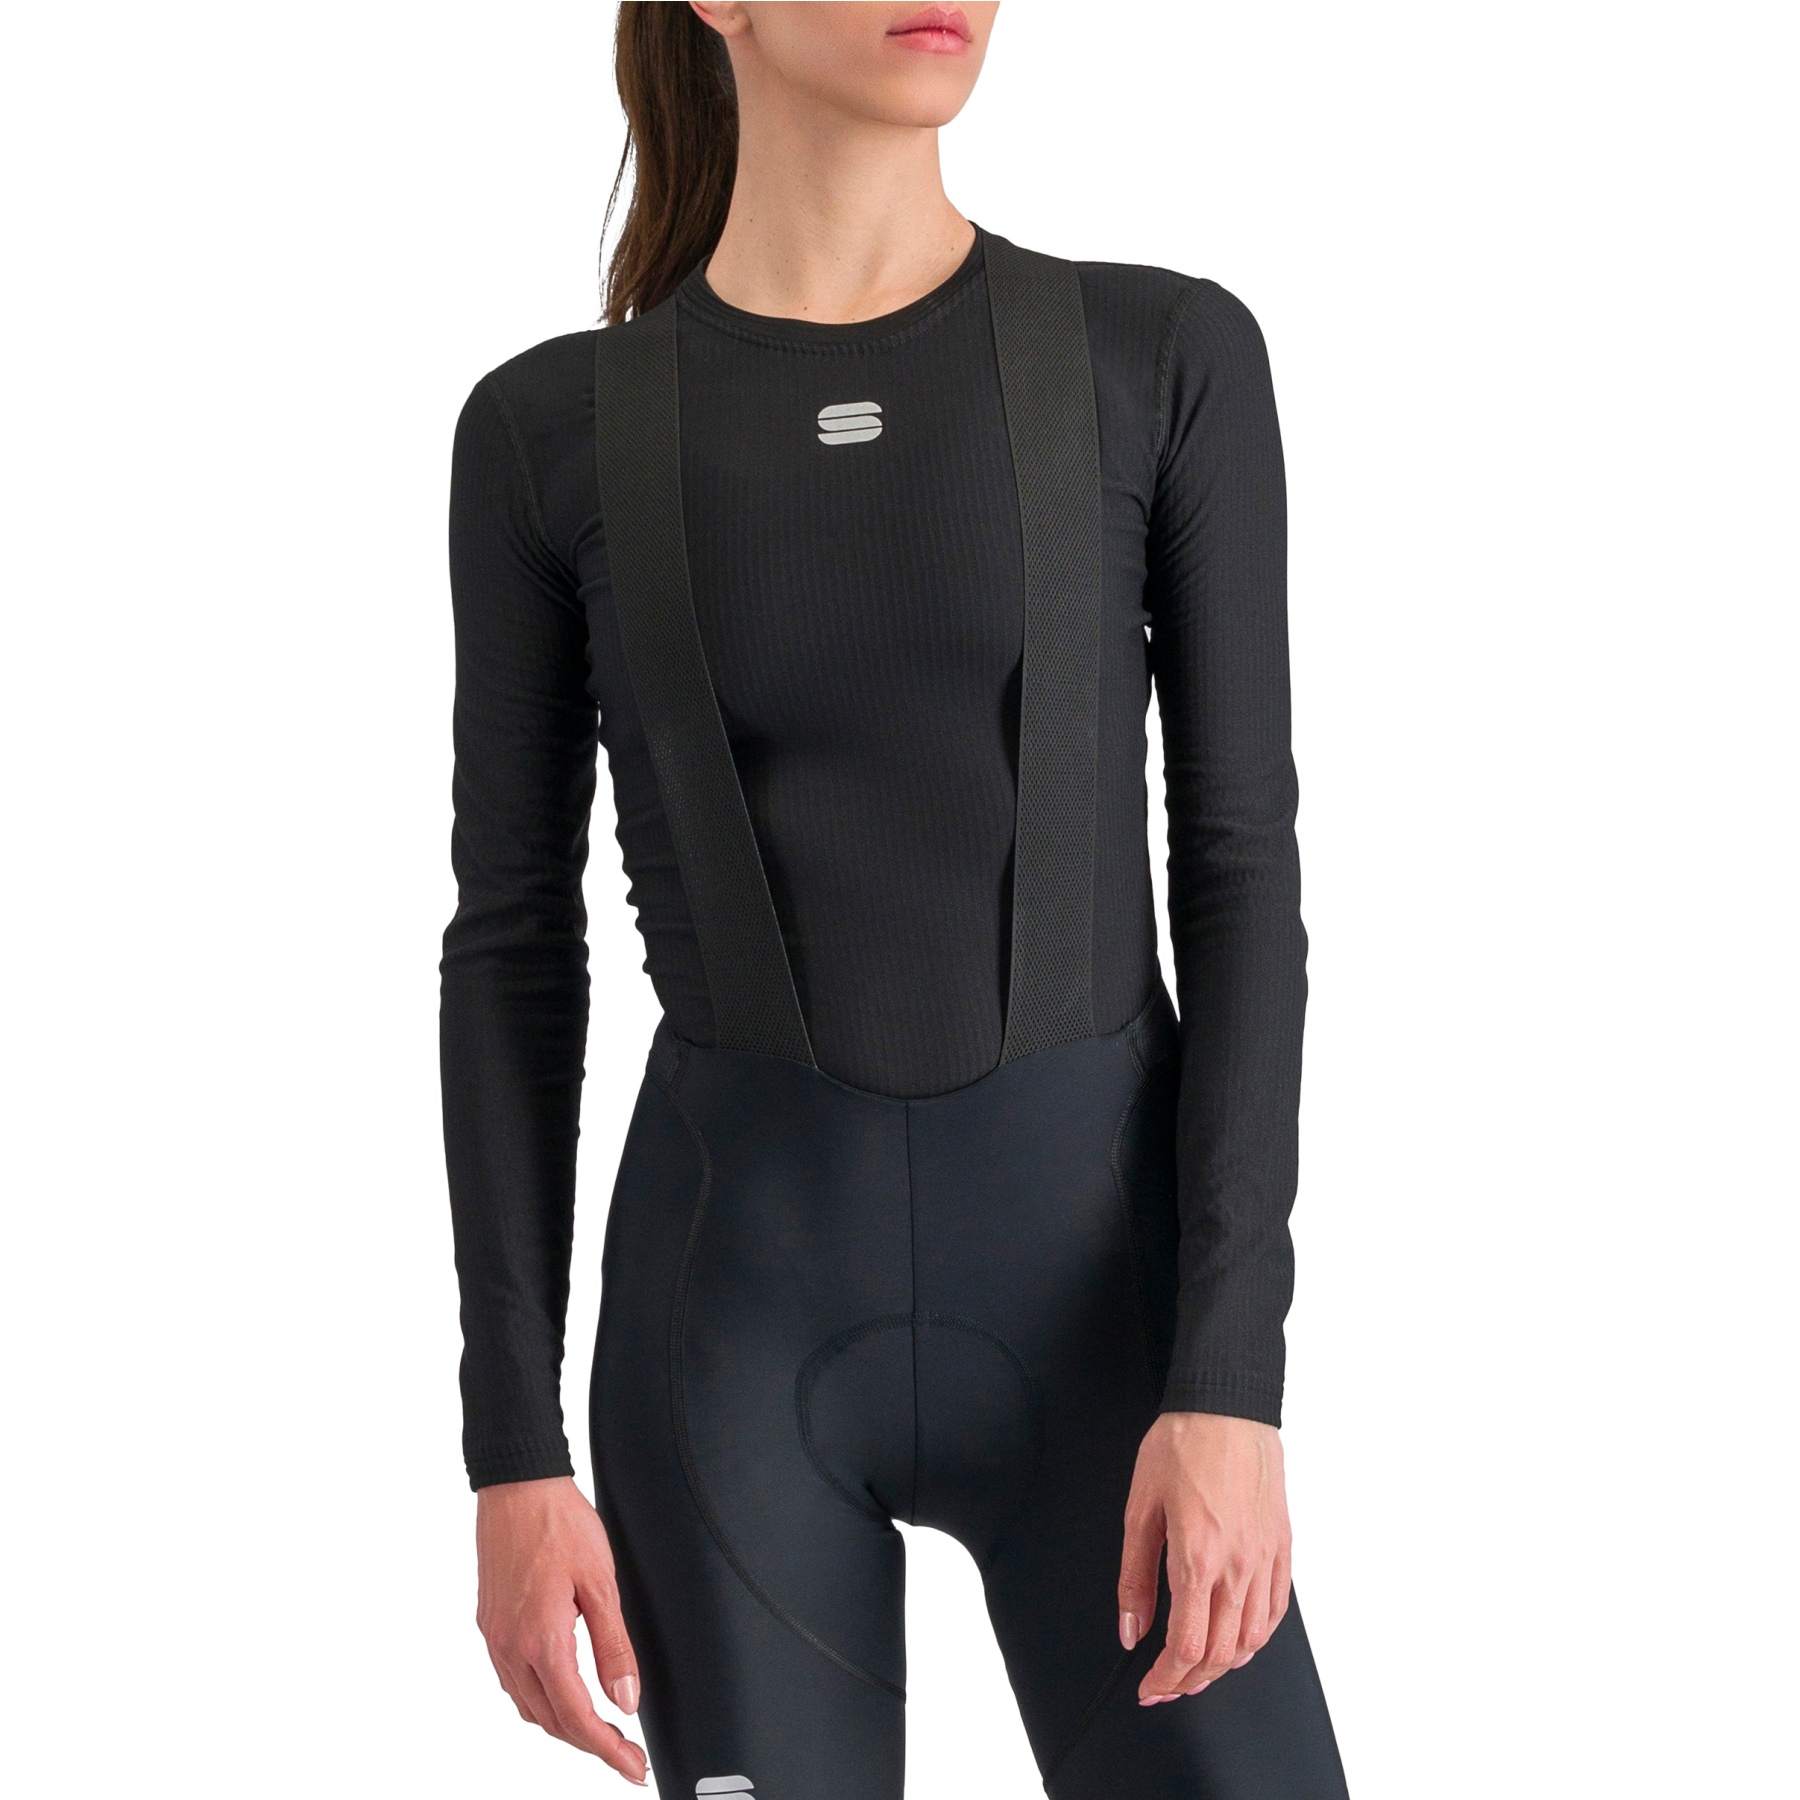 Produktbild von Sportful Bodyfit Pro Baselayer Langarm-Unterhemd Damen - 002 Black